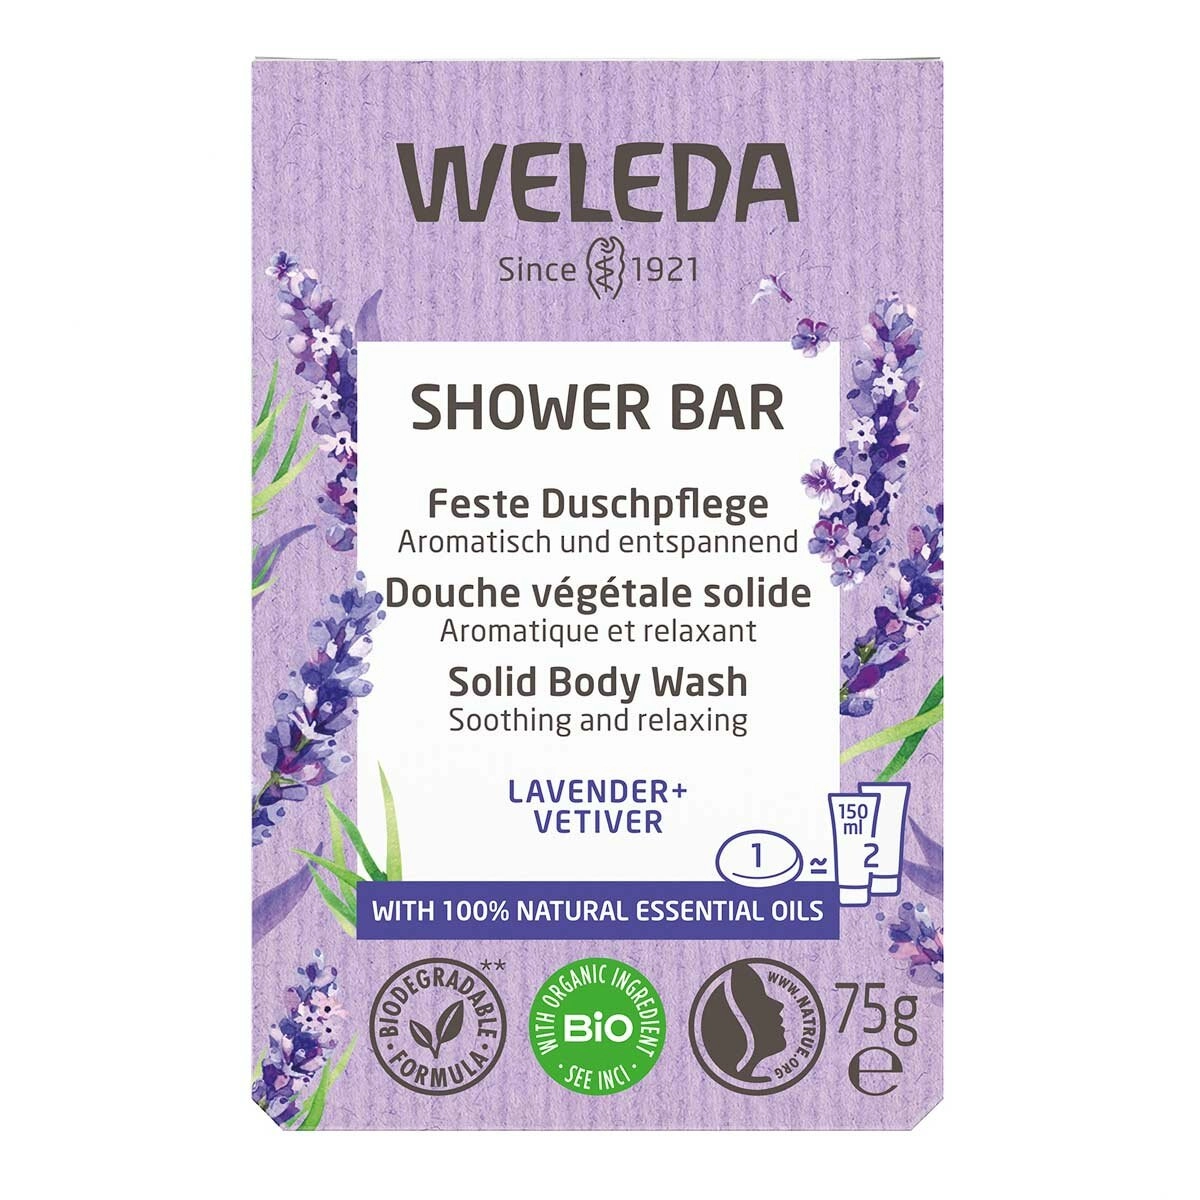 image of Weleda Shower Bar Lavender + Vetiver on white background